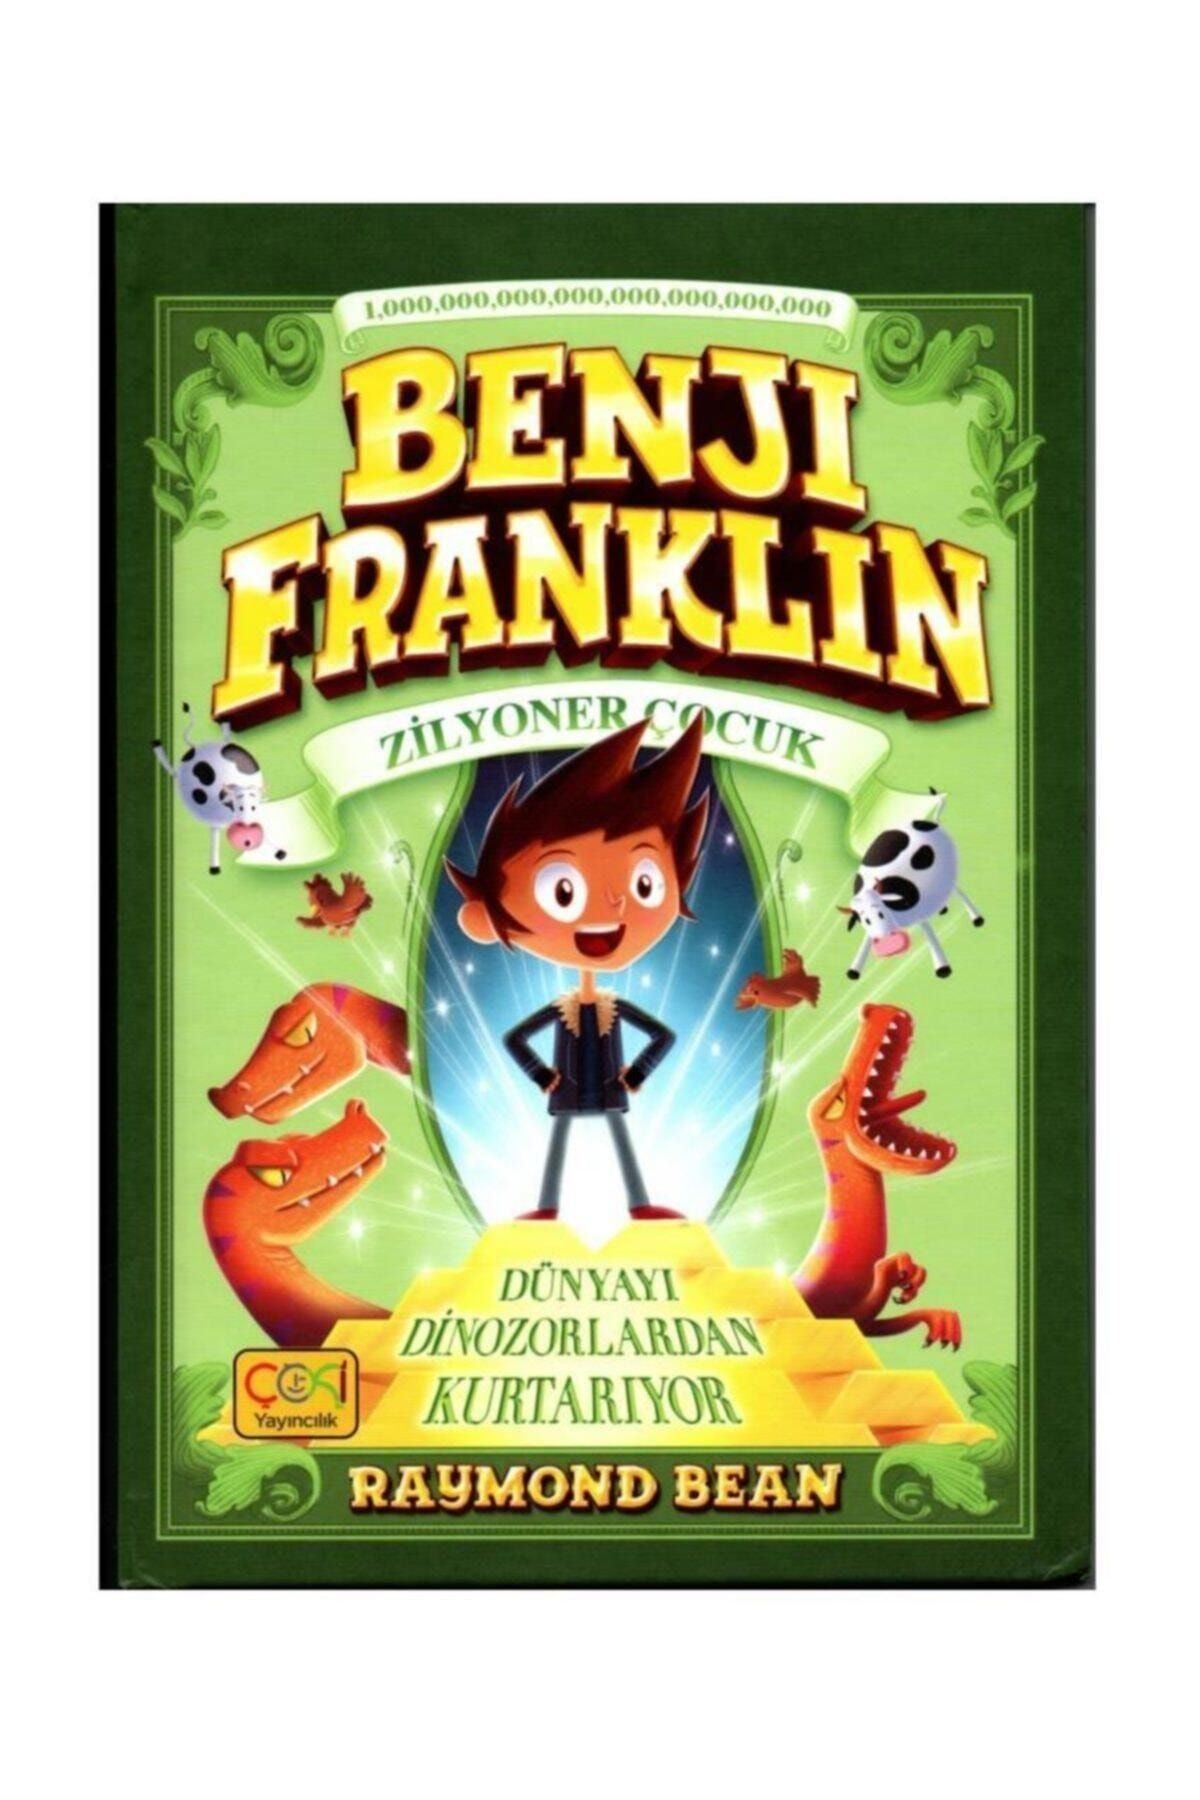 ÇOKİ Yayıncılık Benji Franklin Zilyoner Çocuk & Dünyayı Dinazorlardan Kurtarıyor